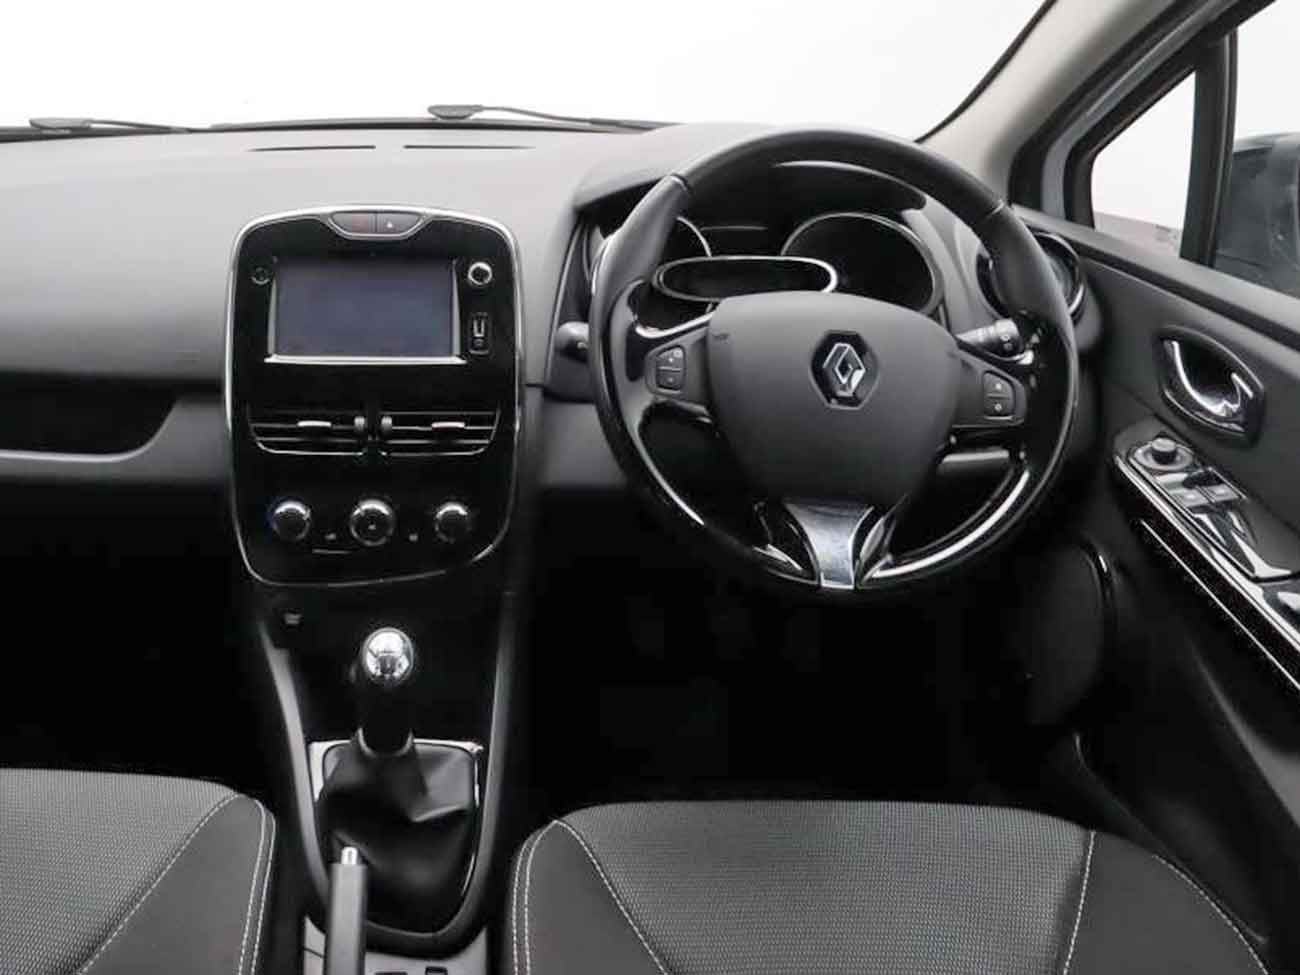 Interior view of Renault Clio